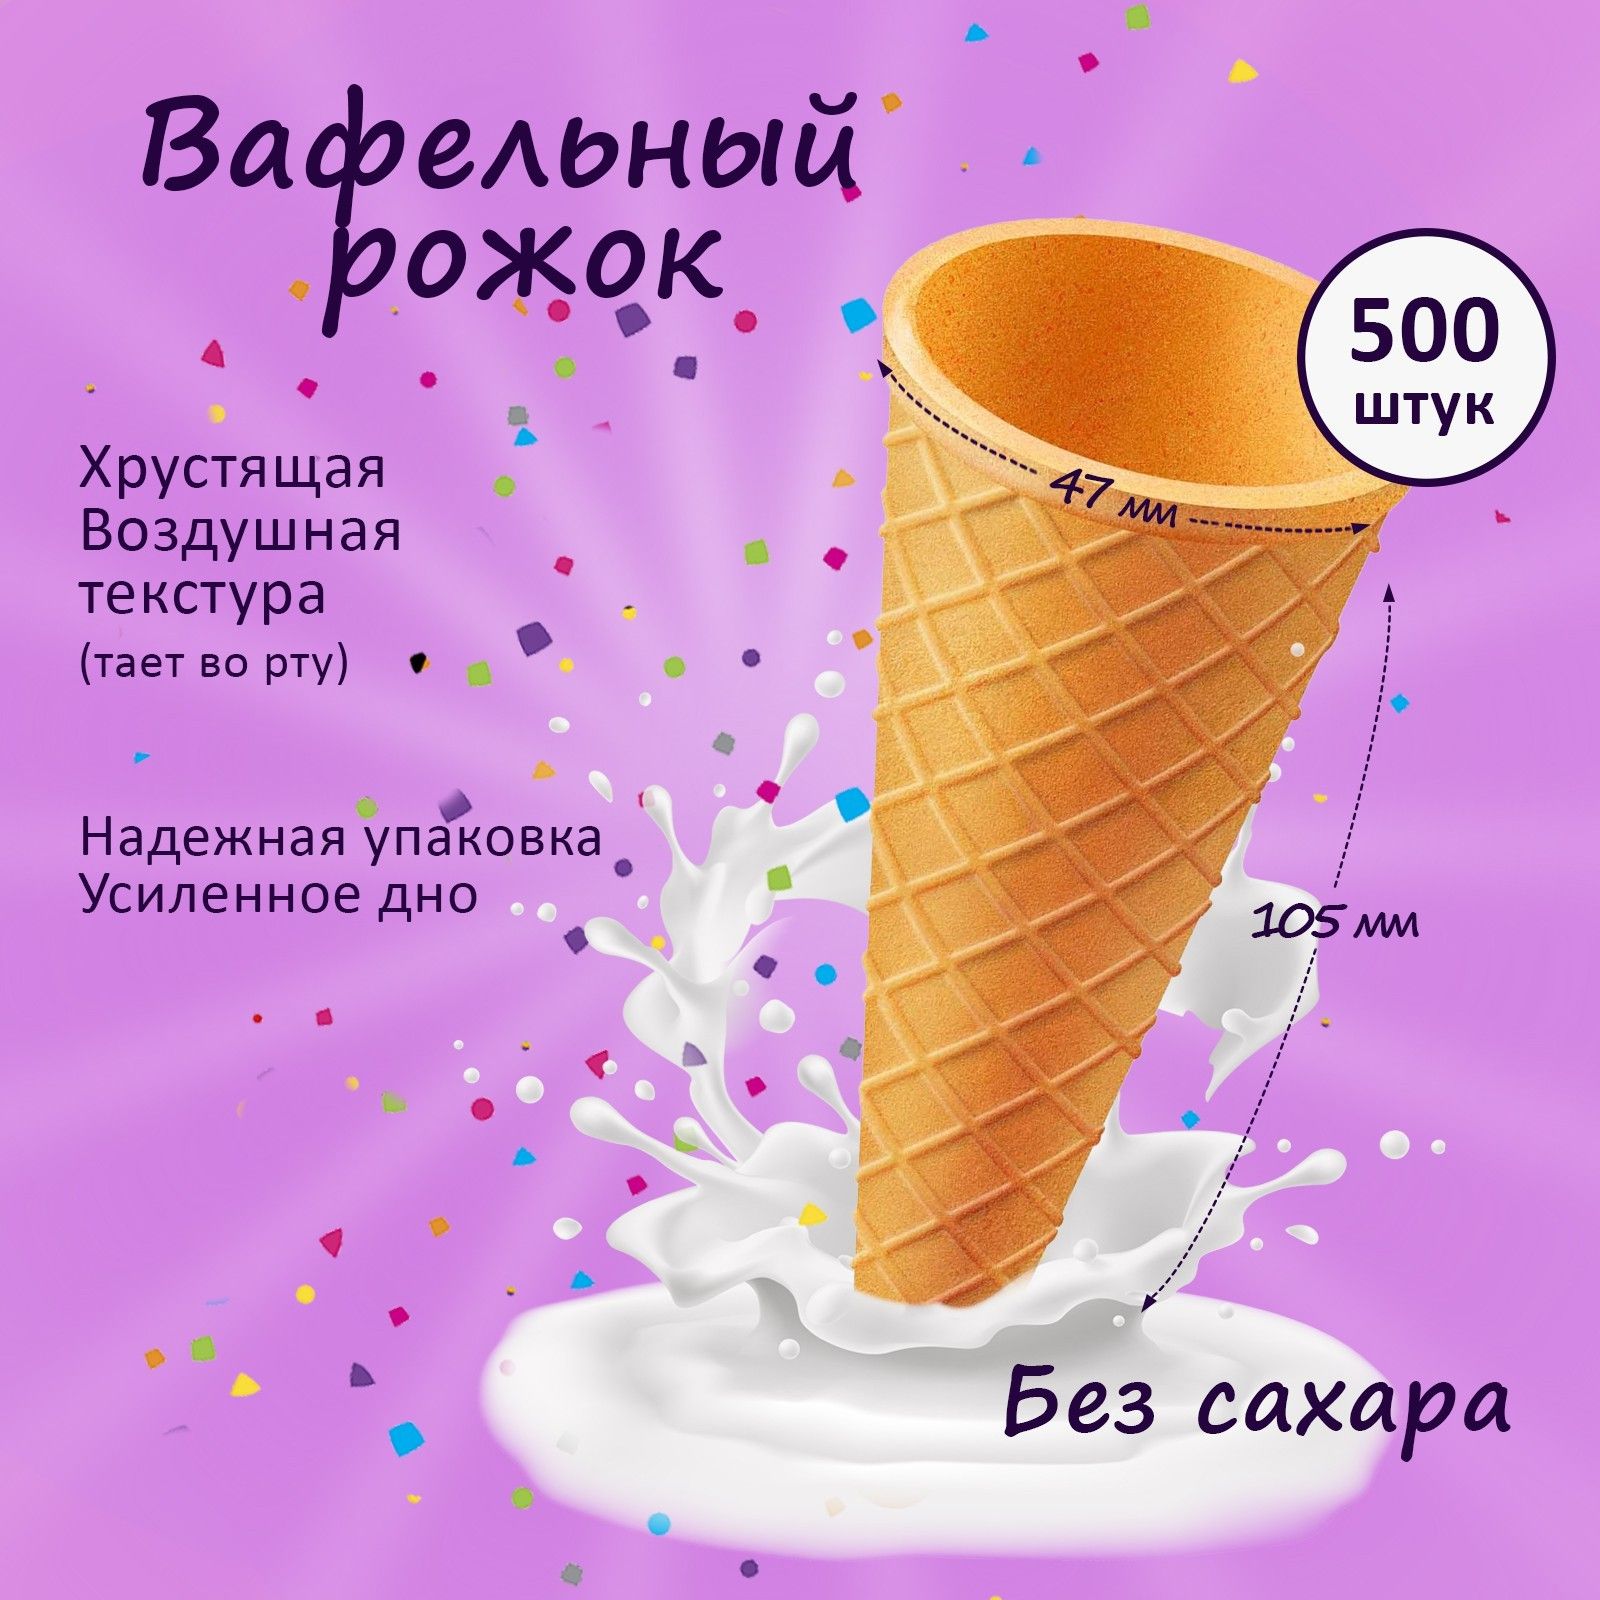 500 мороженого. Мороженое 500г.